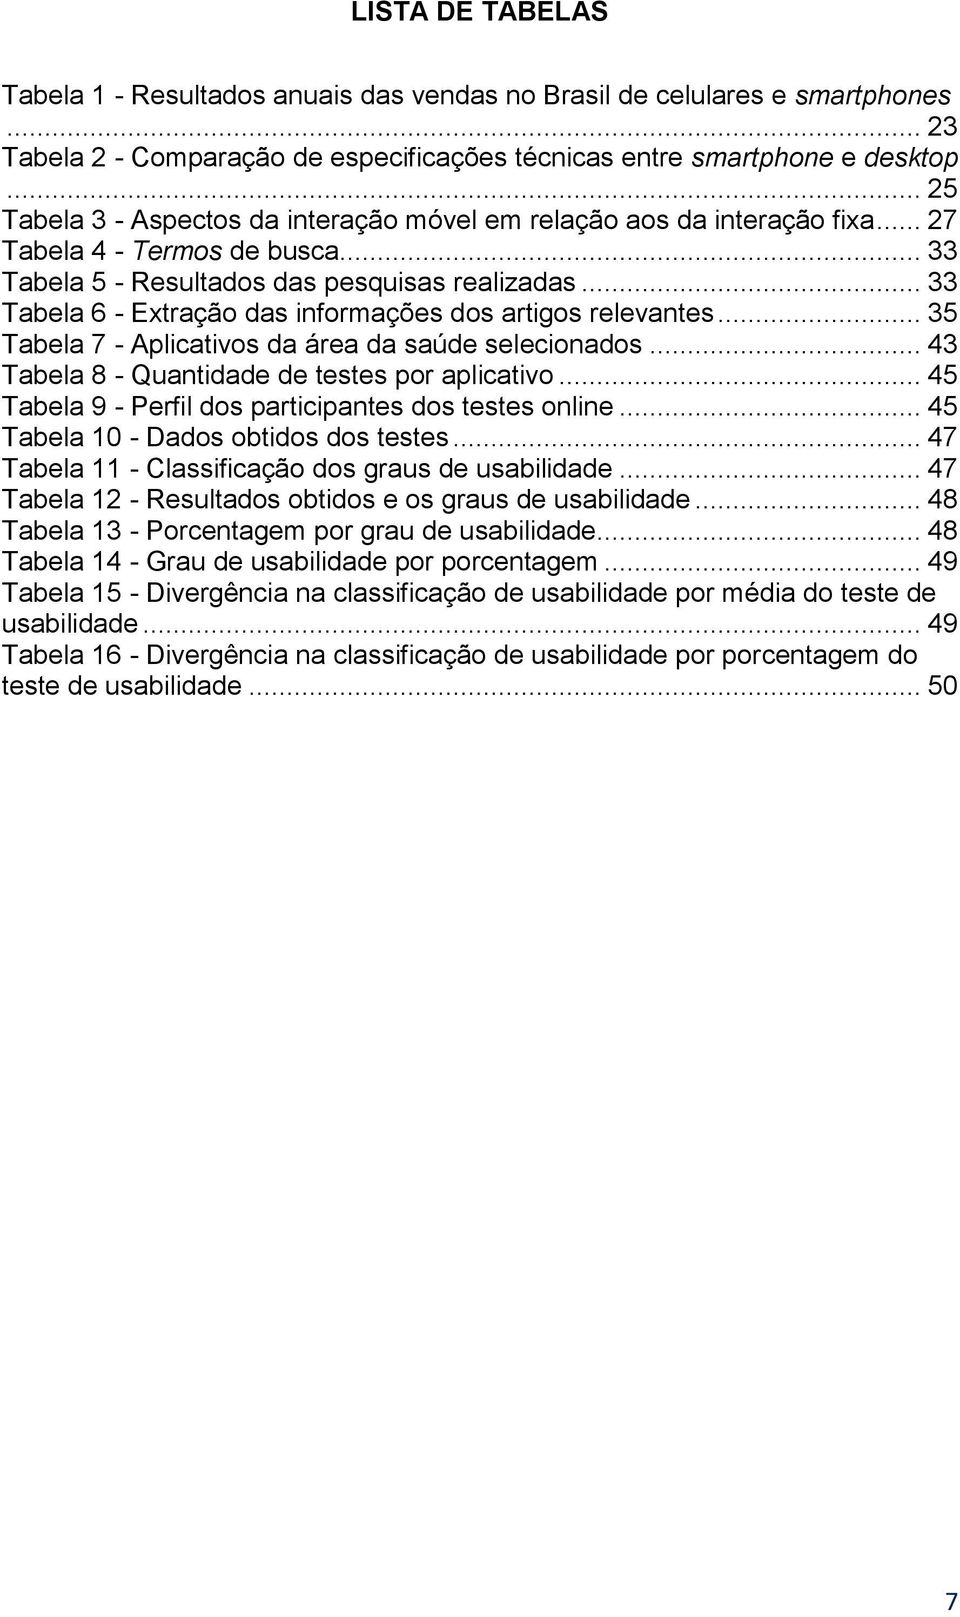 .. 33 Tabela 6 - Extração das informações dos artigos relevantes... 35 Tabela 7 - Aplicativos da área da saúde selecionados... 43 Tabela 8 - Quantidade de testes por aplicativo.